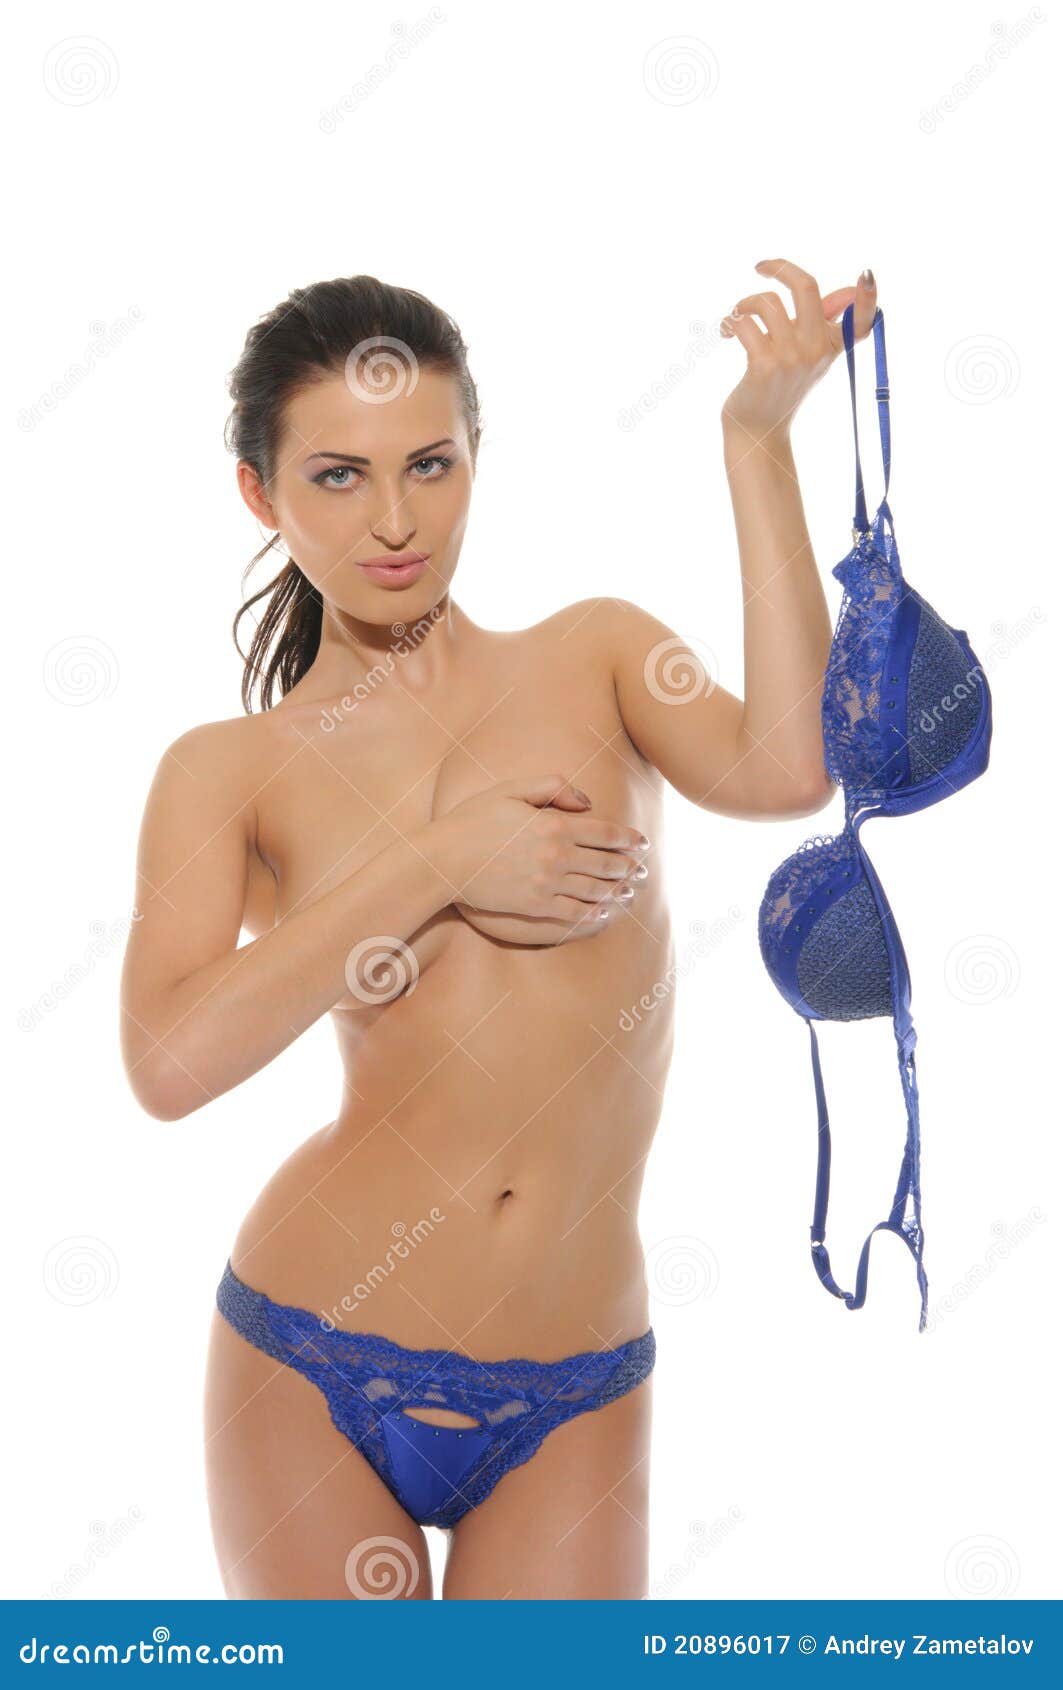 Women taking off bra